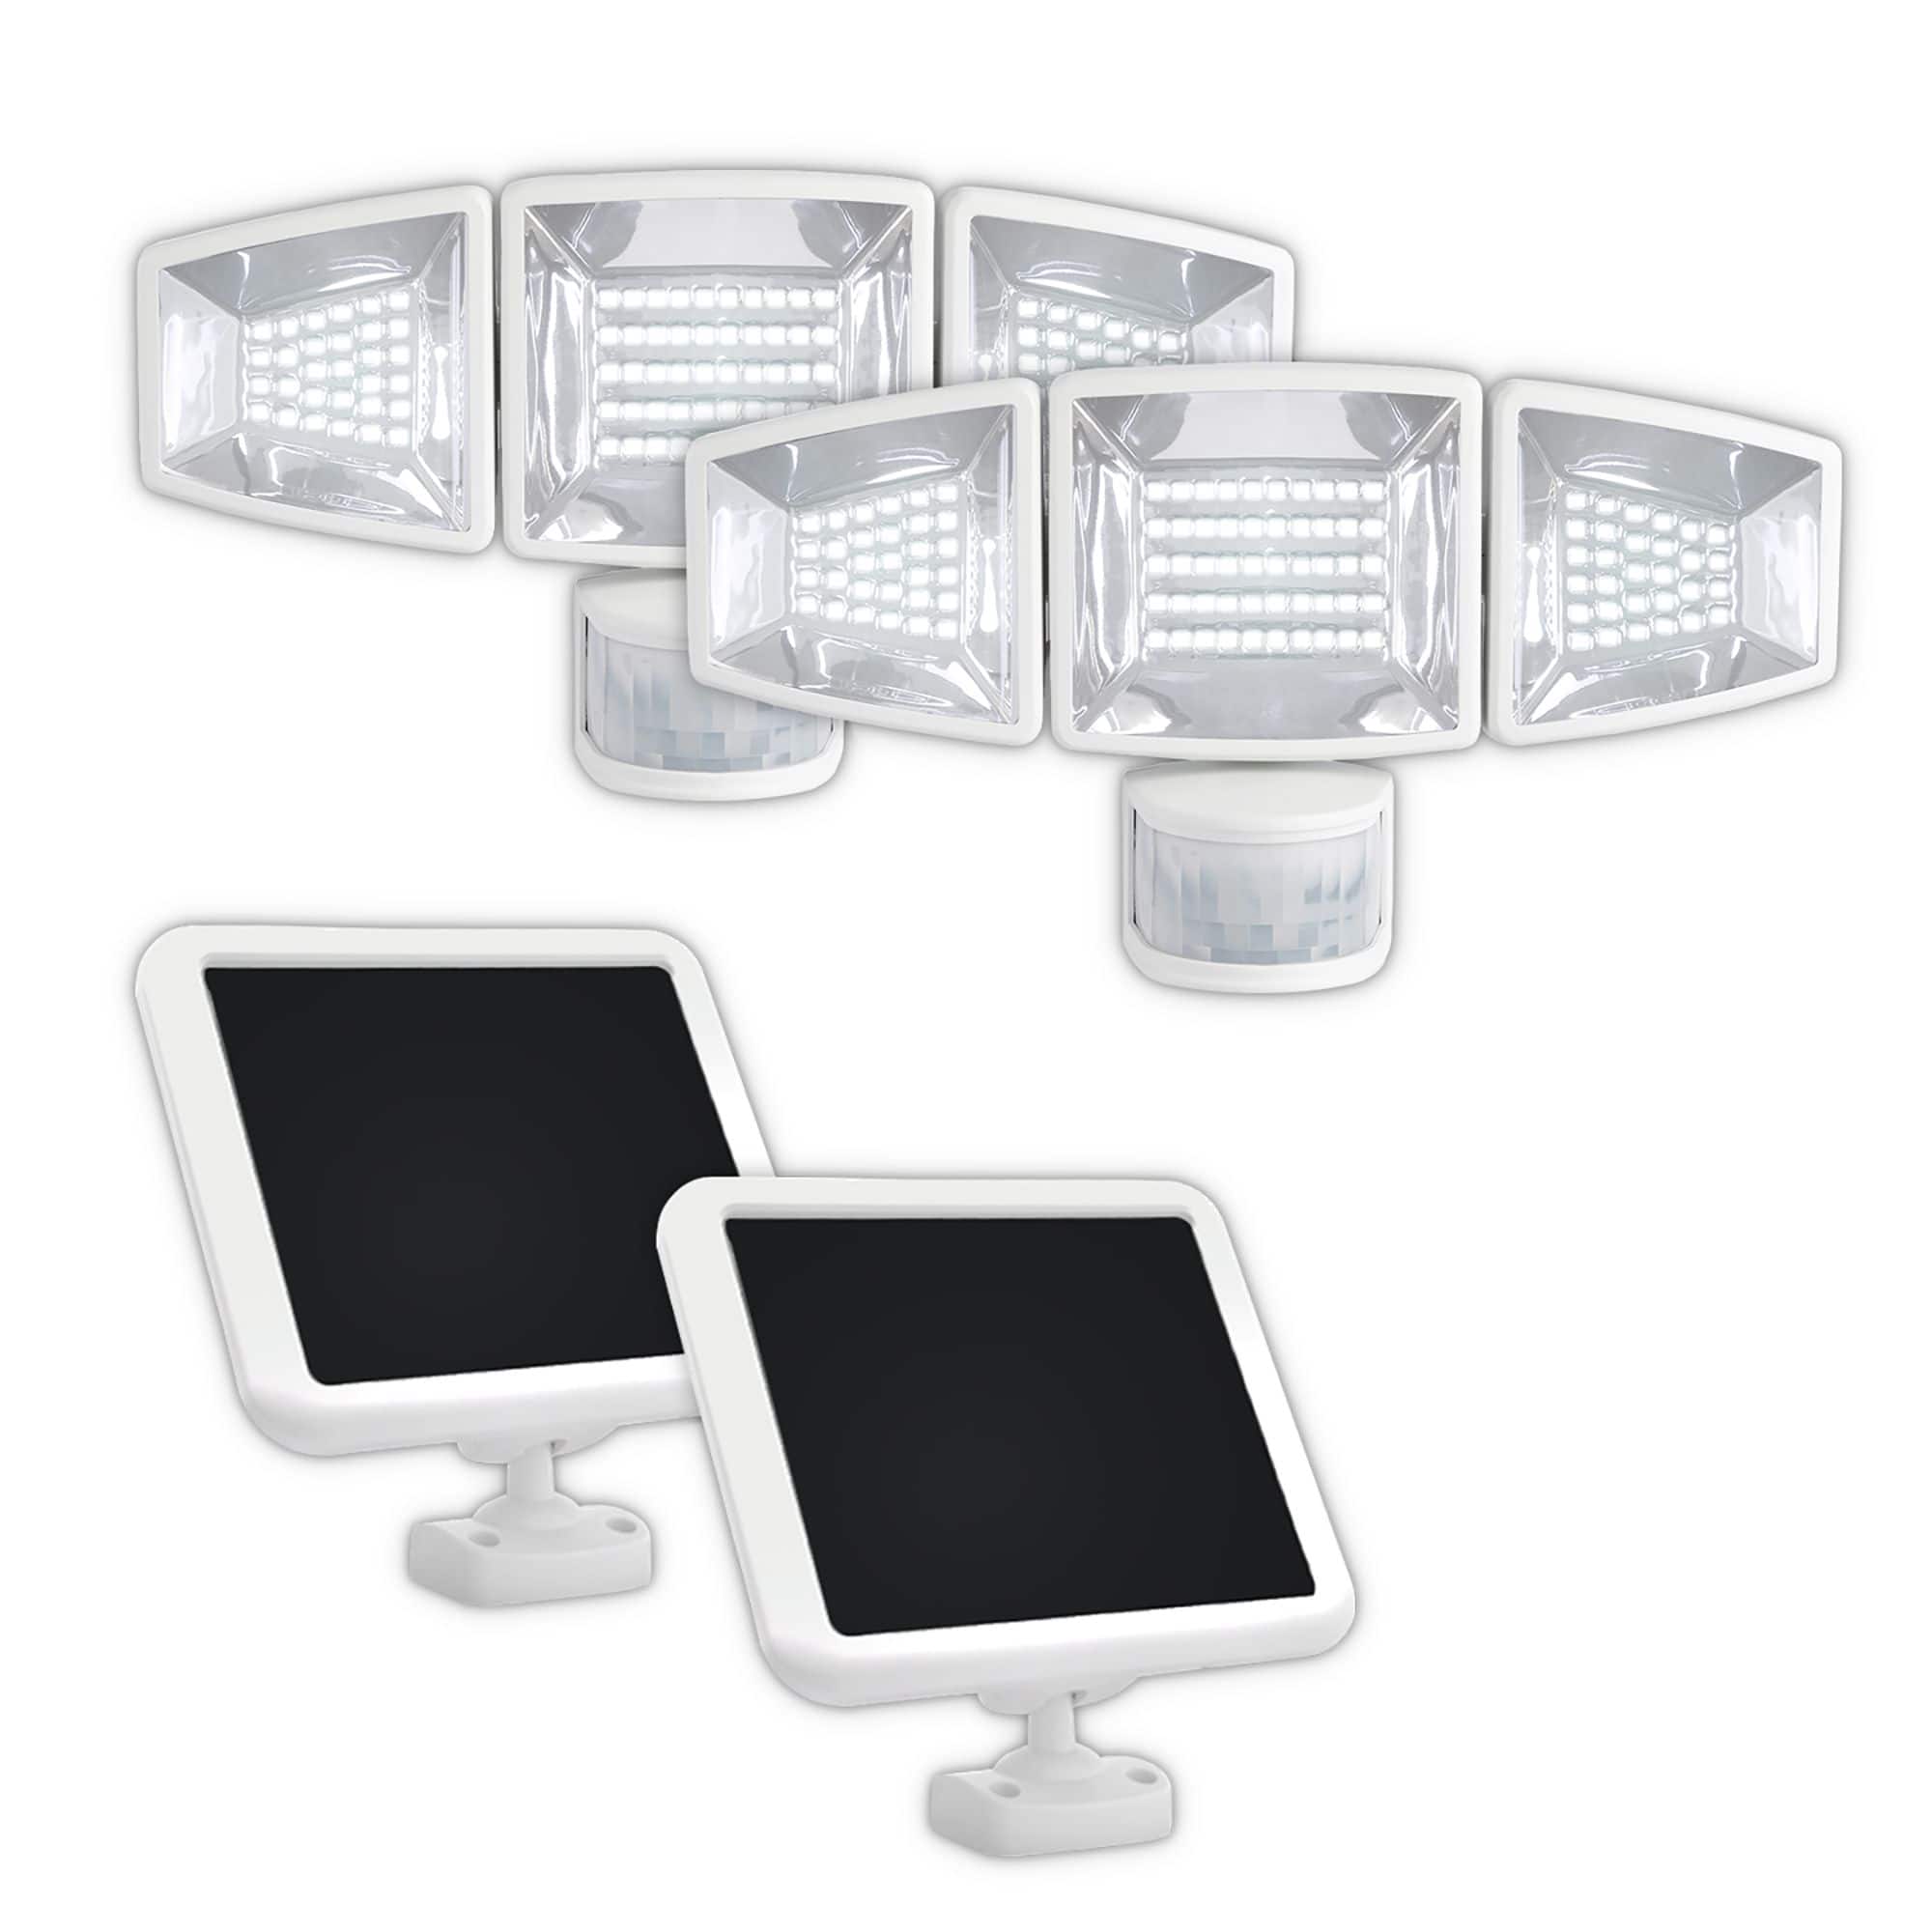 Lampe de poche LED Super Bright 1500 idéale pour le travail, les loisirs,  les sports, le camping, la pêche, la chasse et l'assistance routière